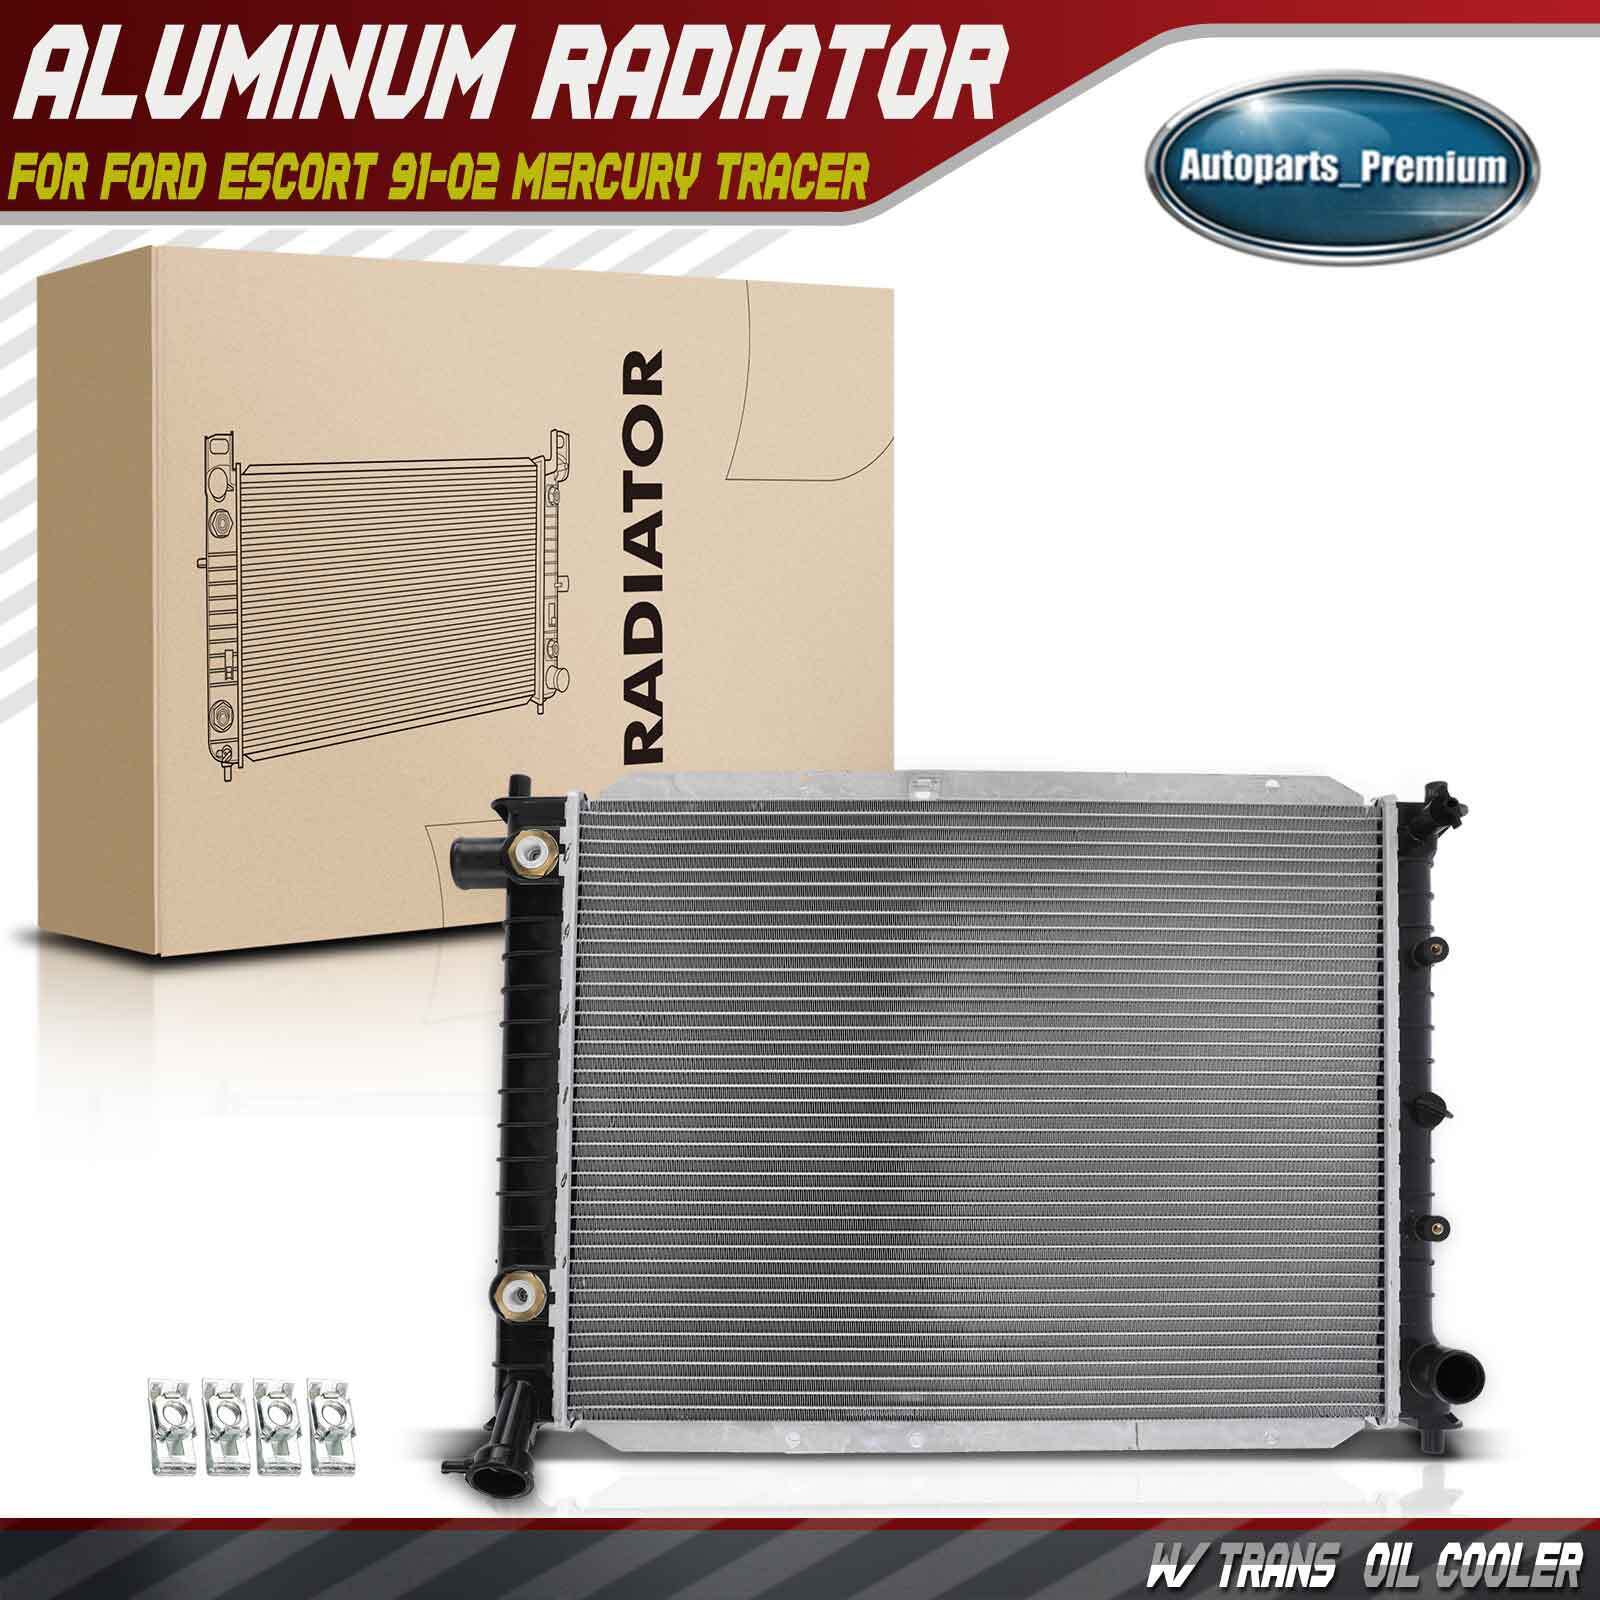 Radiator w/ Oil Cooler for Ford Escort 91-02 Mercury Tracer 1.8L 1.9L 2.0L Auto